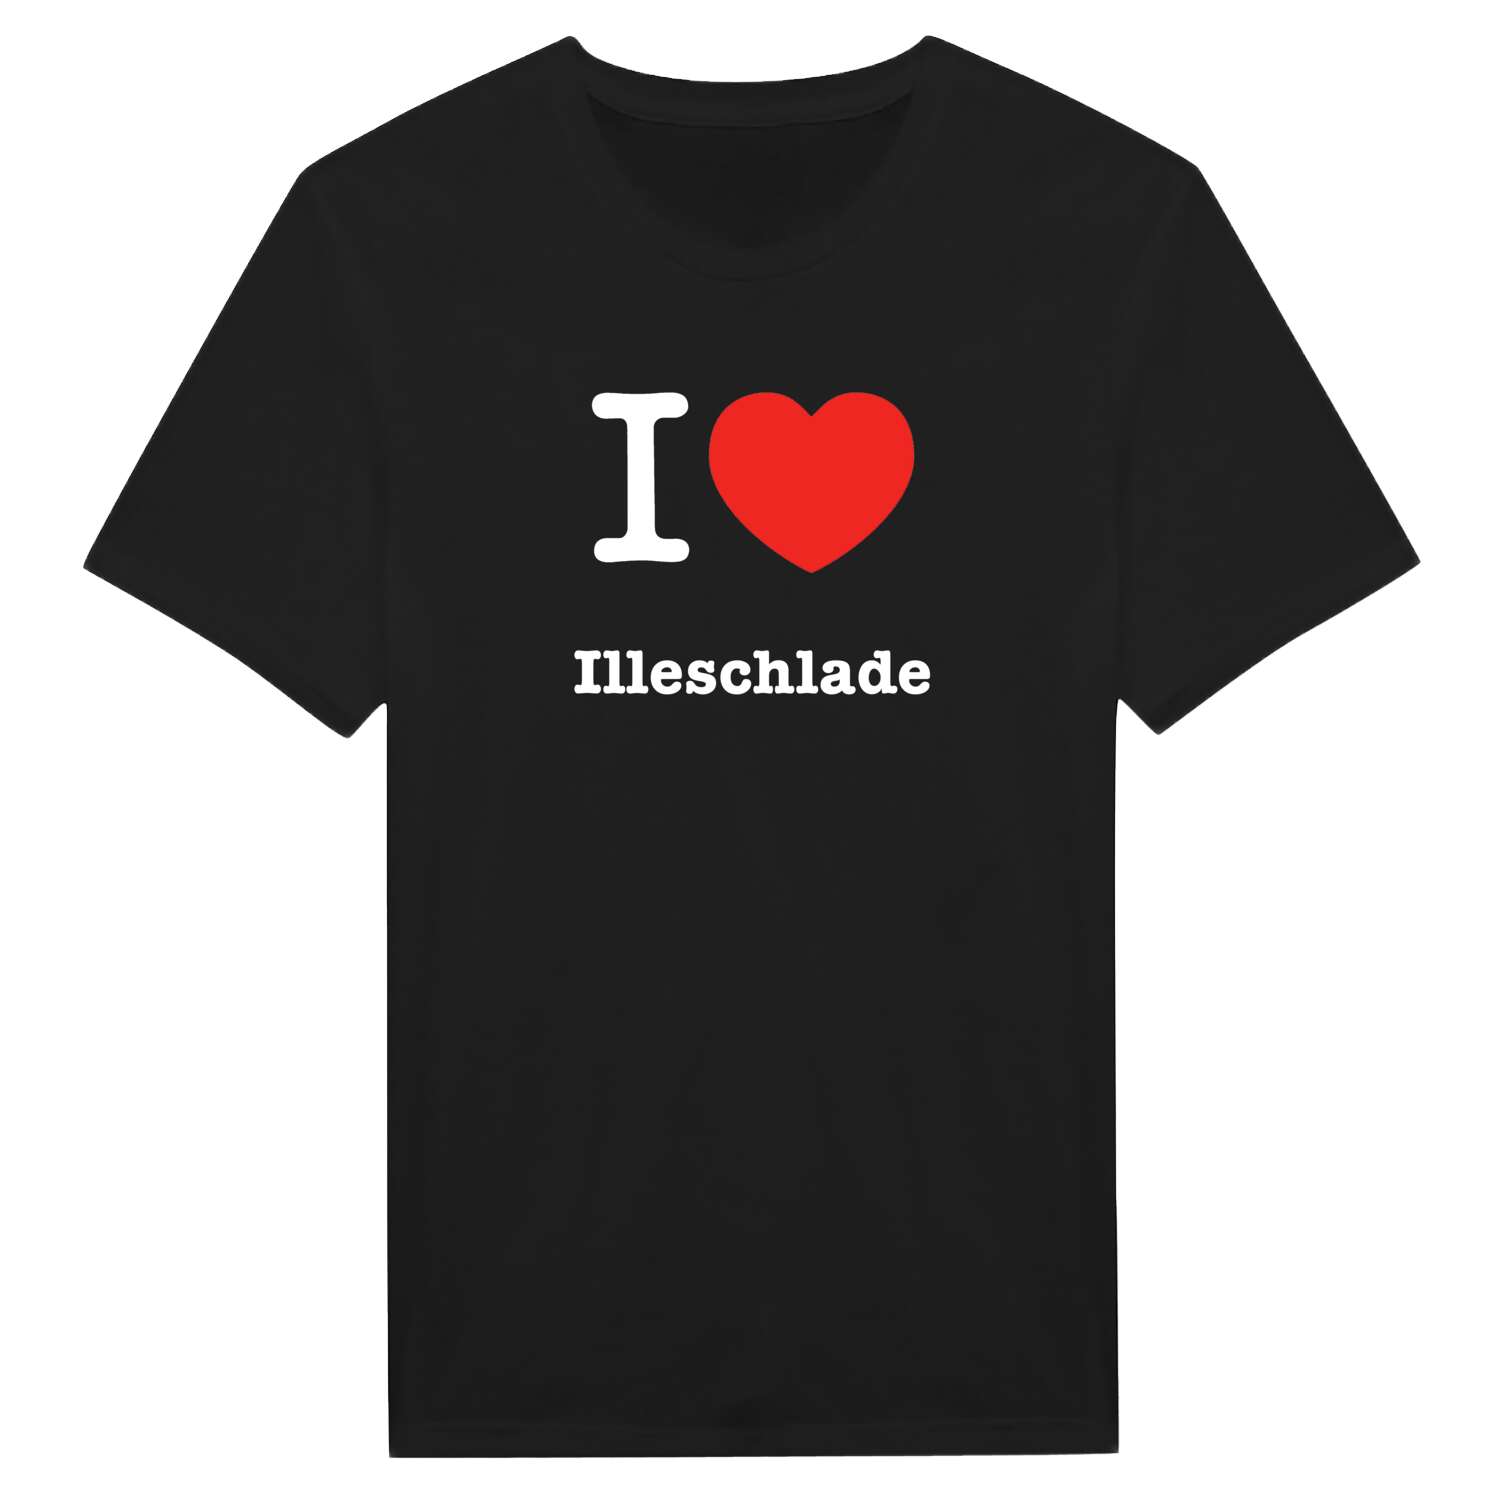 Illeschlade T-Shirt »I love«